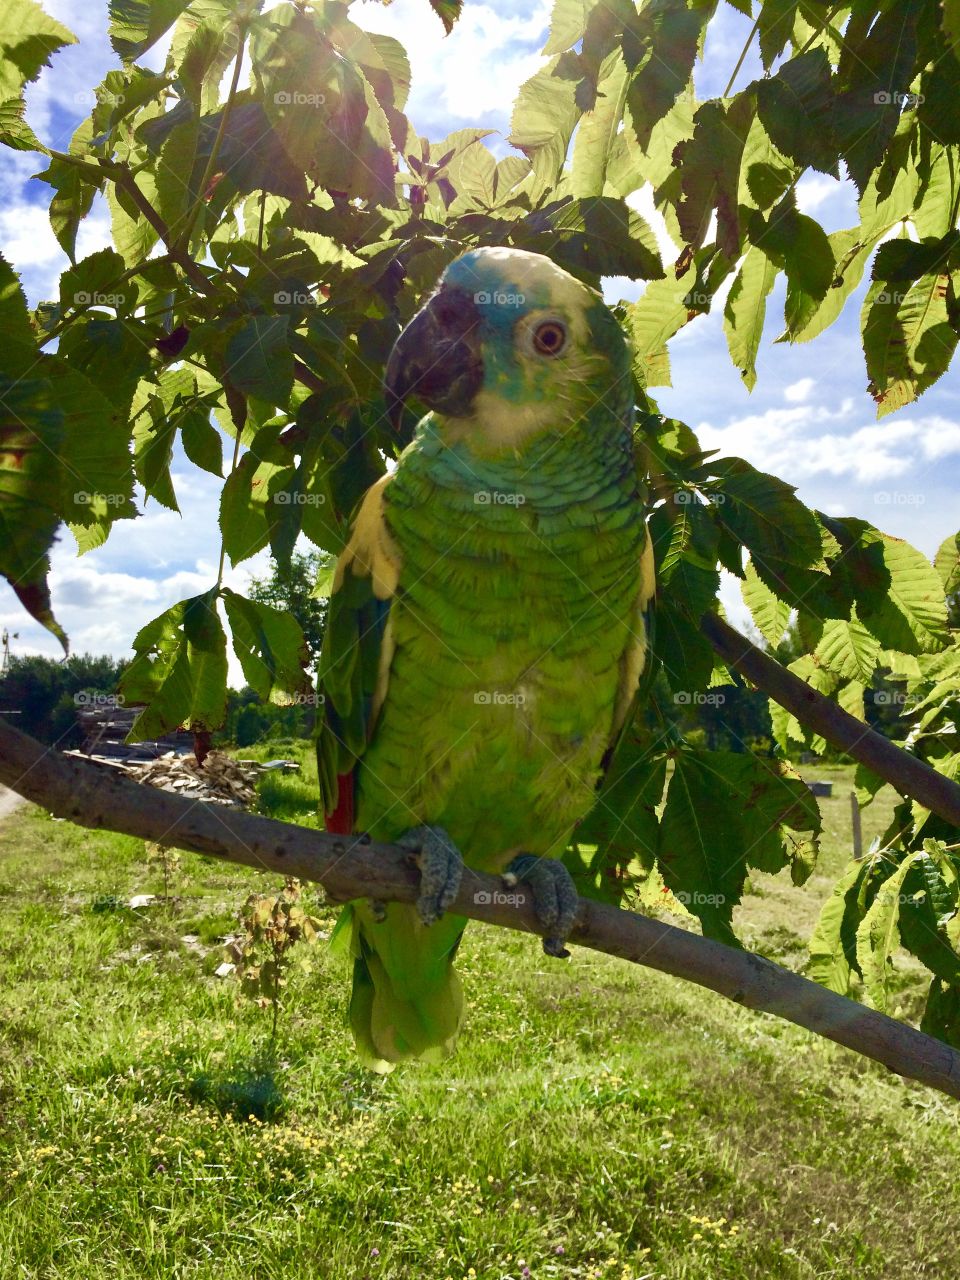 Amazon parrot in tree